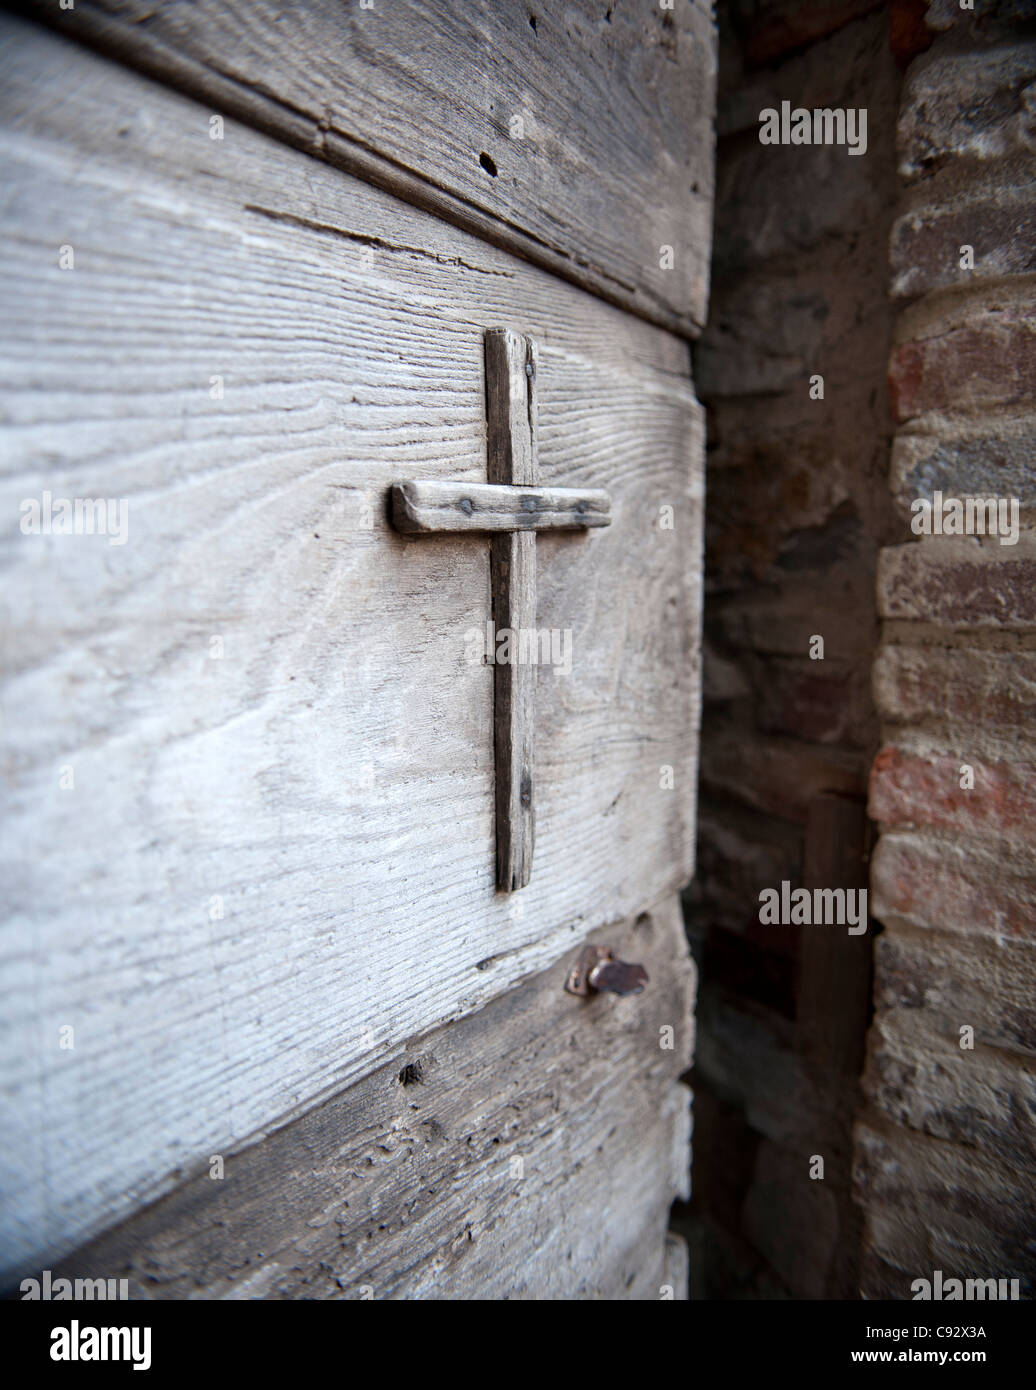 Viele historische Eigenschaften in Italien sind geschmückt mit katholischen Symbolik wie Kruzifix in Türen gestaltet. Stockfoto